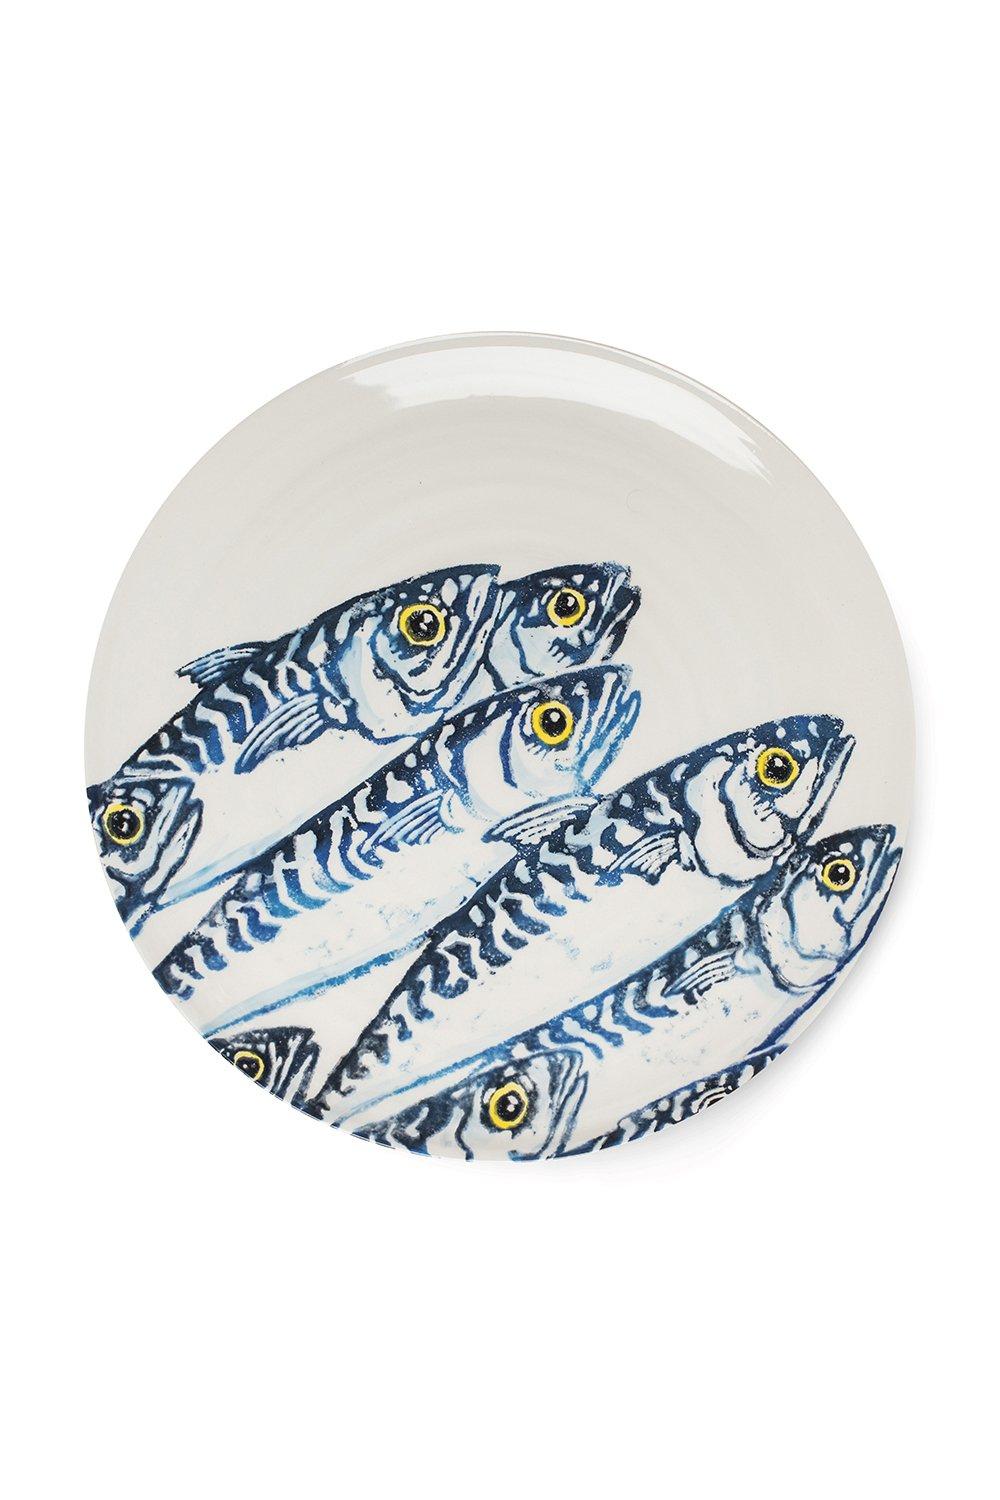 Creatures Ceramic Round Platter with Shoal of Vivid Blue Mackerel Design 37cm